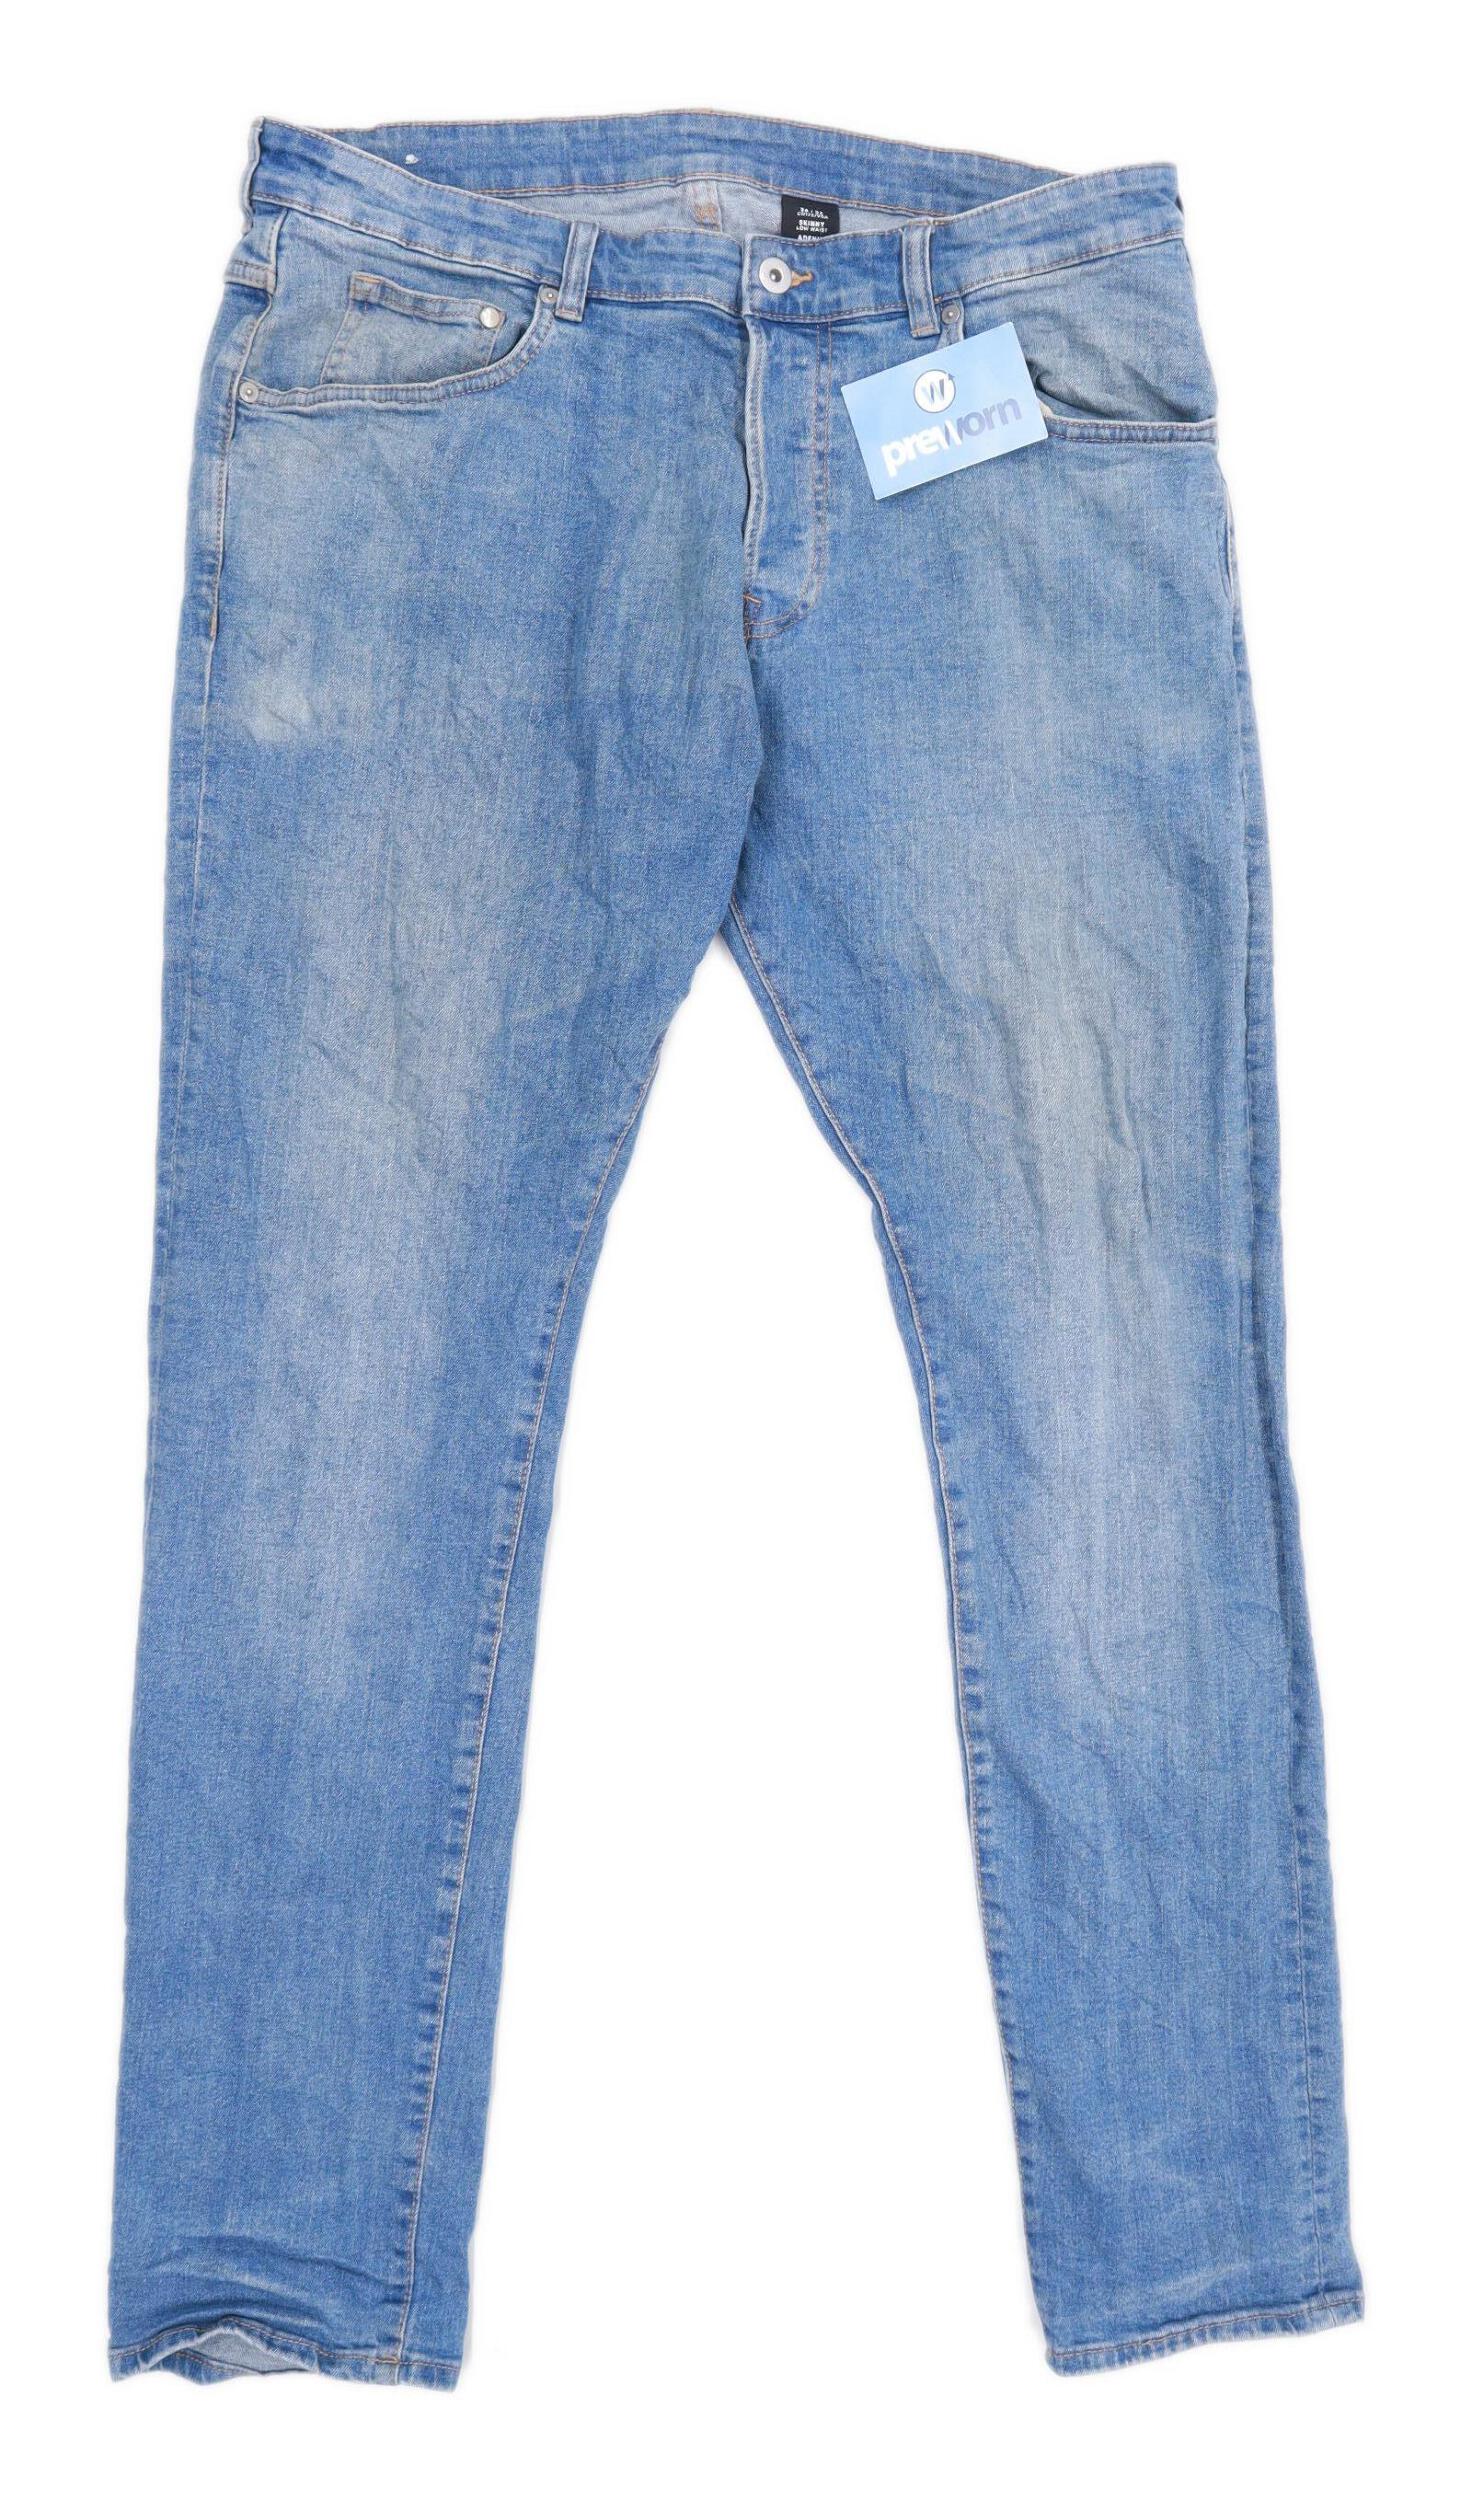 blend jeans mens